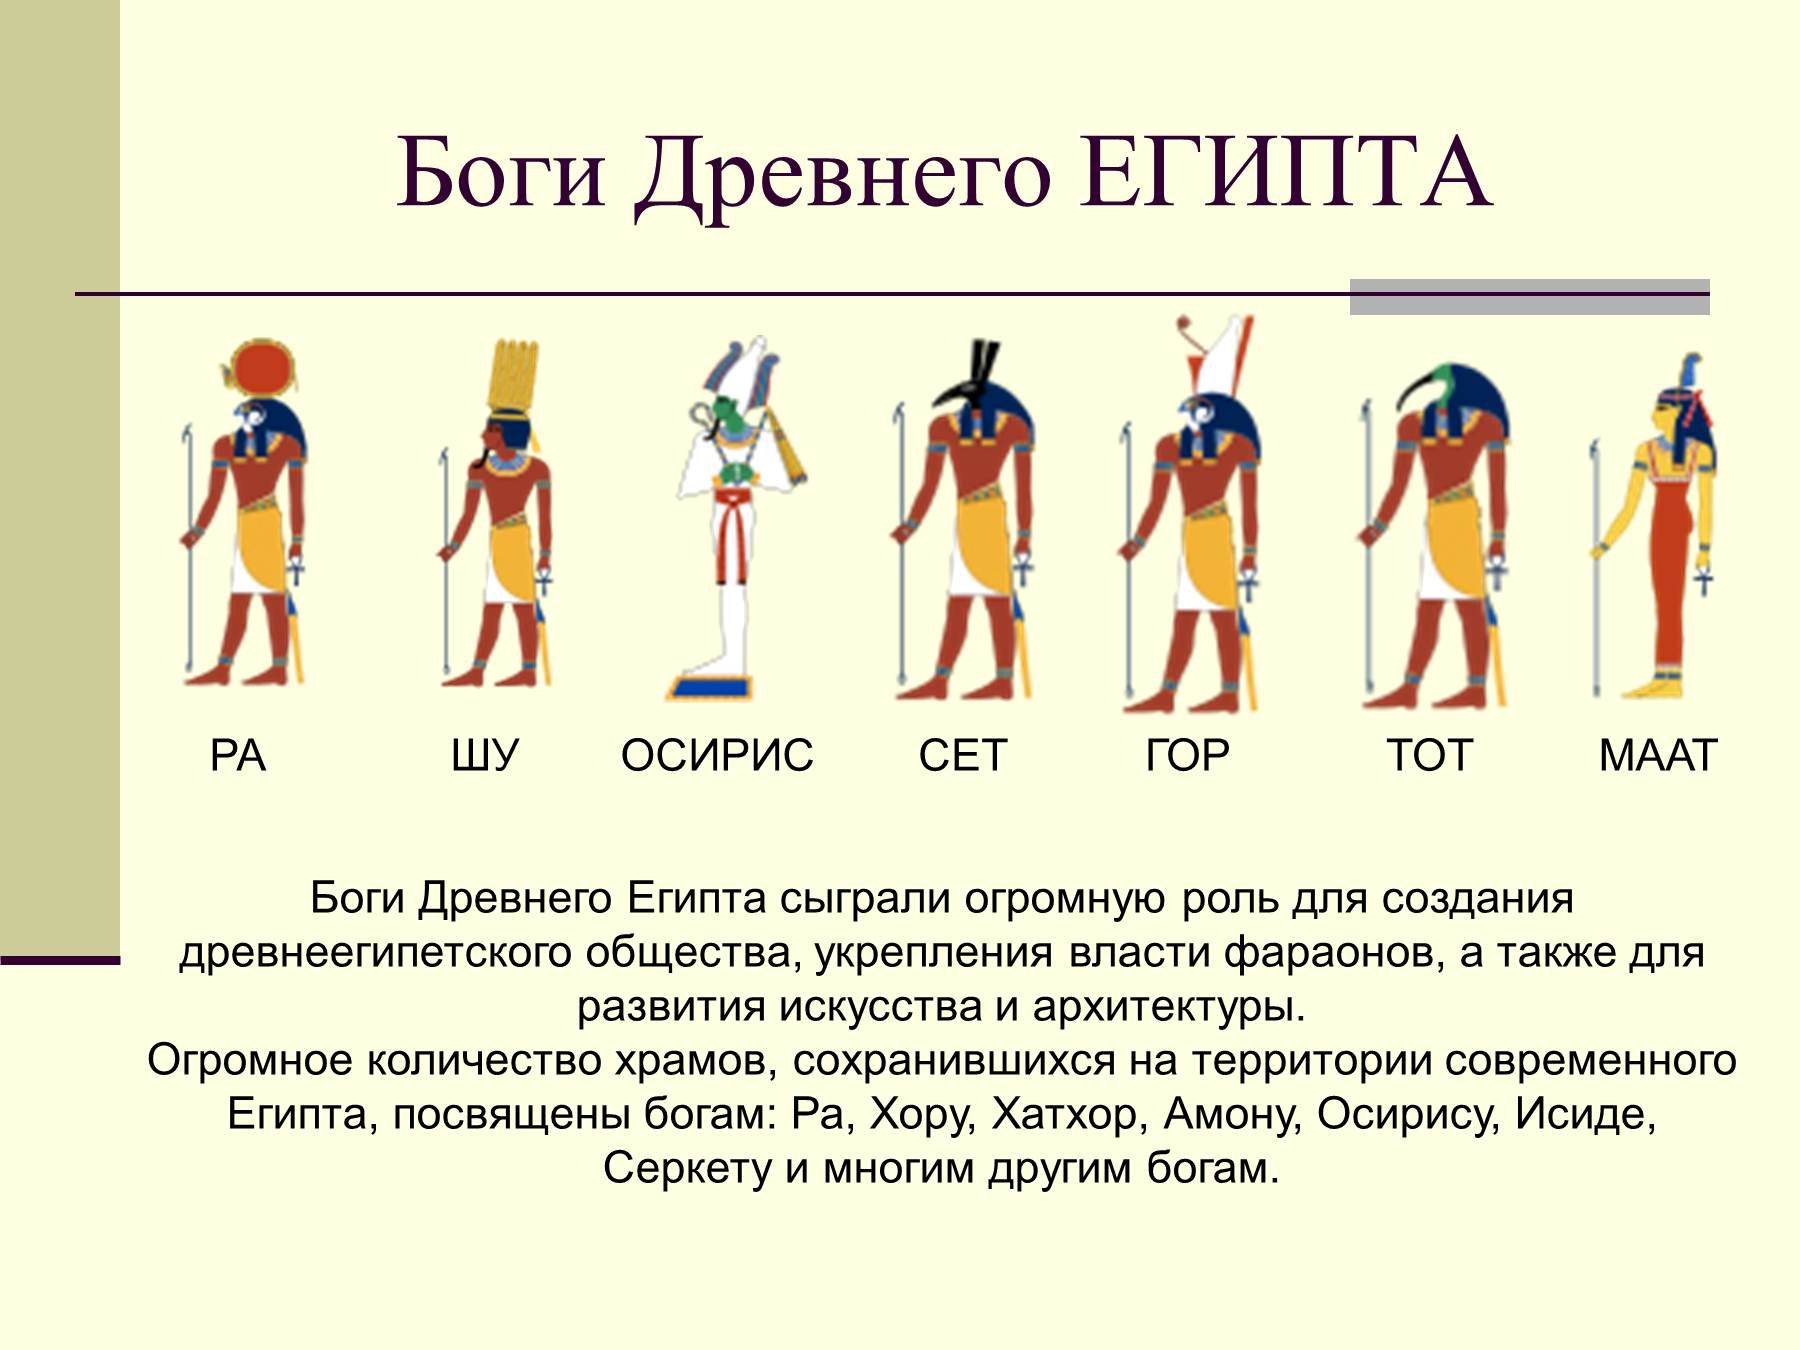 Изображения относящиеся к истории древнего египта. Боги древнего Египта 5 класс история. Древнеегипетские боги и их изображения. Боги Египта история древнего Египта 5 класс.